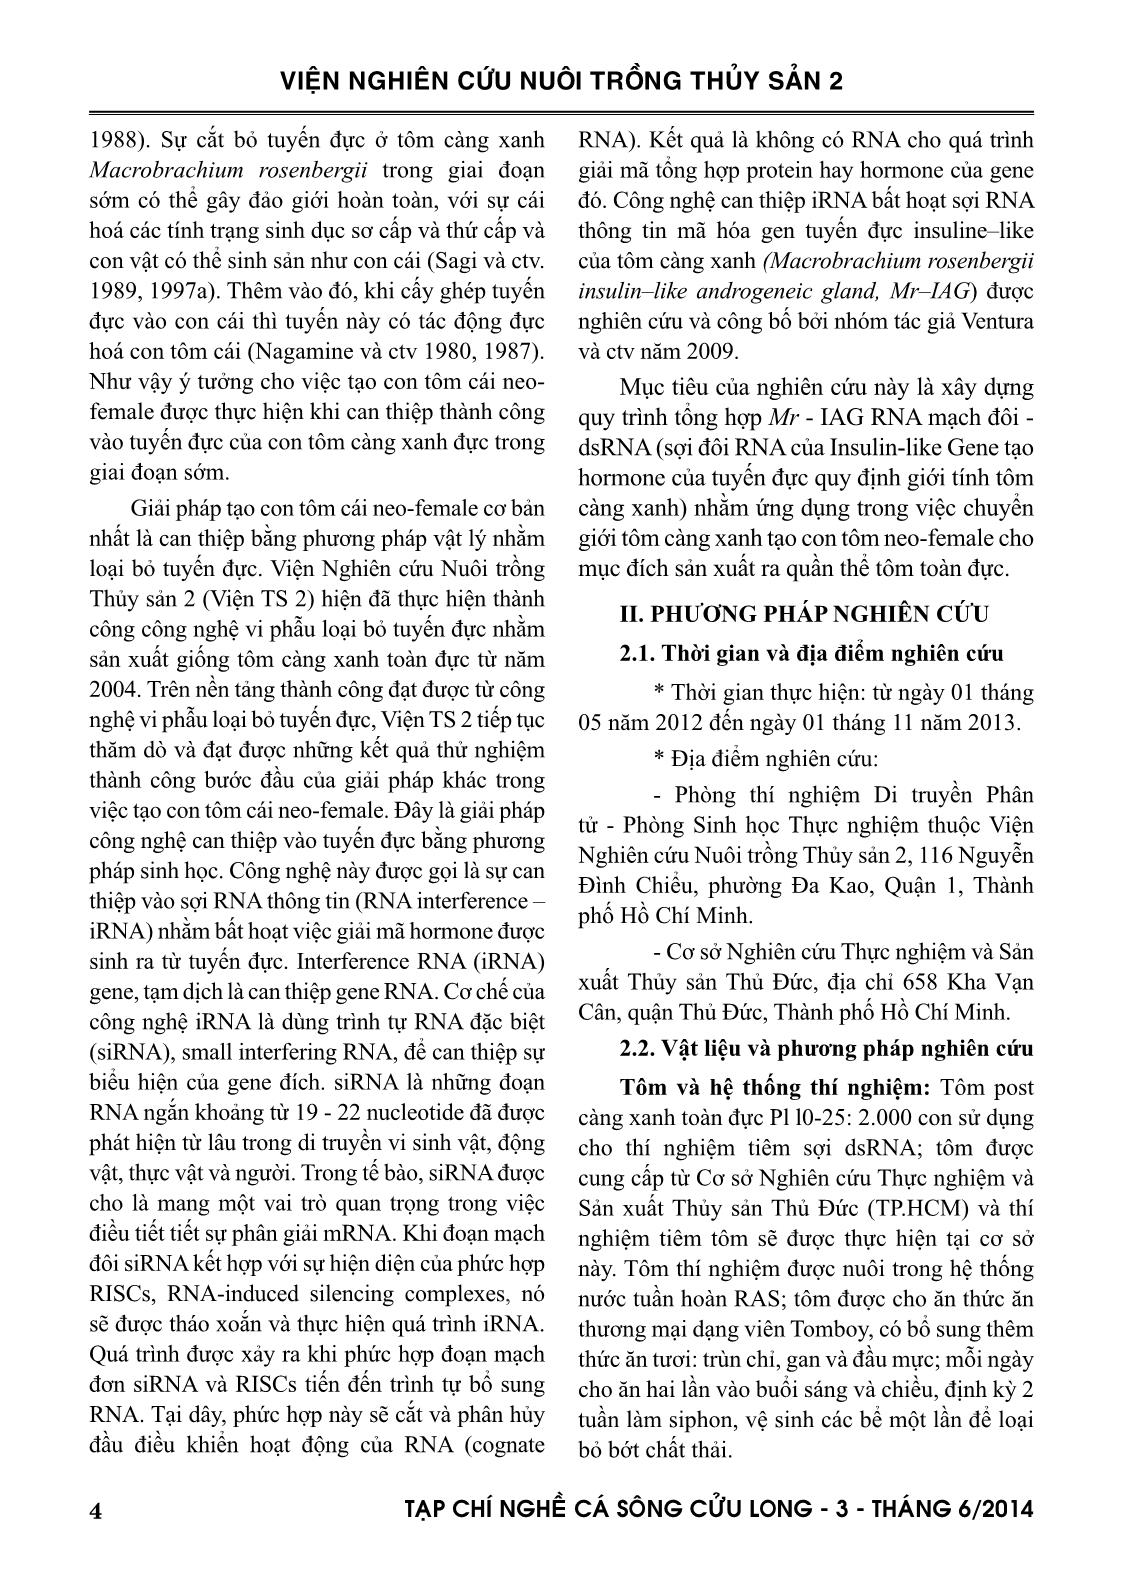 Tạp chí Nghề cá sông Cửu Long - Số 03/2014 trang 4